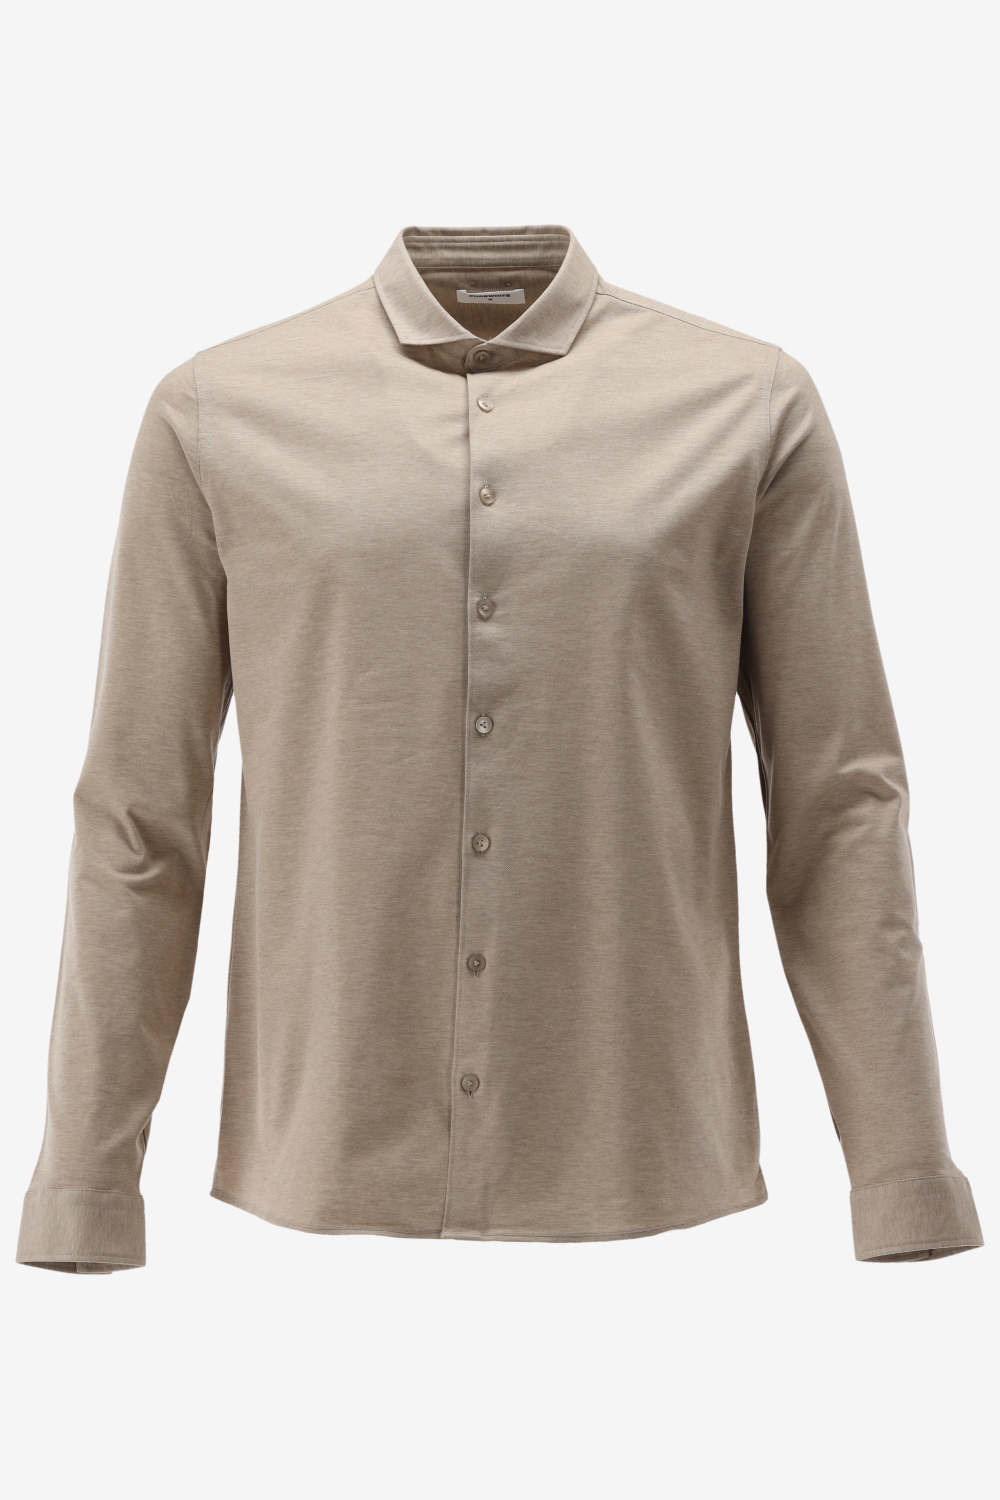 Purewhite - Heren Slim Fit Overhemd - Bruin - Maat S